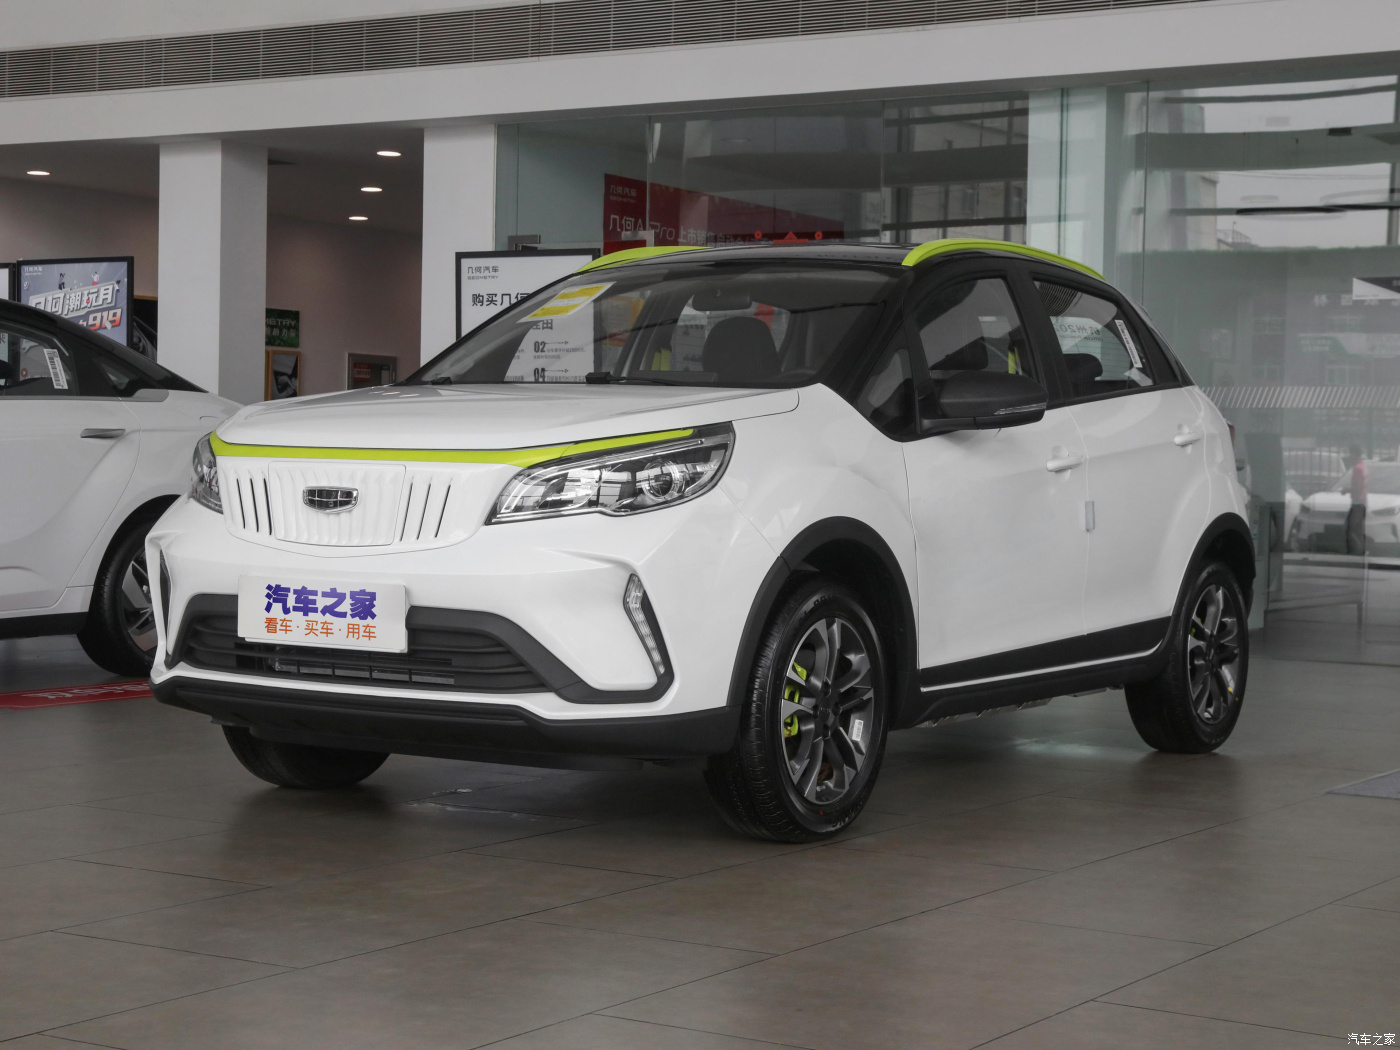 Индивидуальный заказ и доставка автомобиля Geely Geometry EX3 из Китая по конкурентной цене.